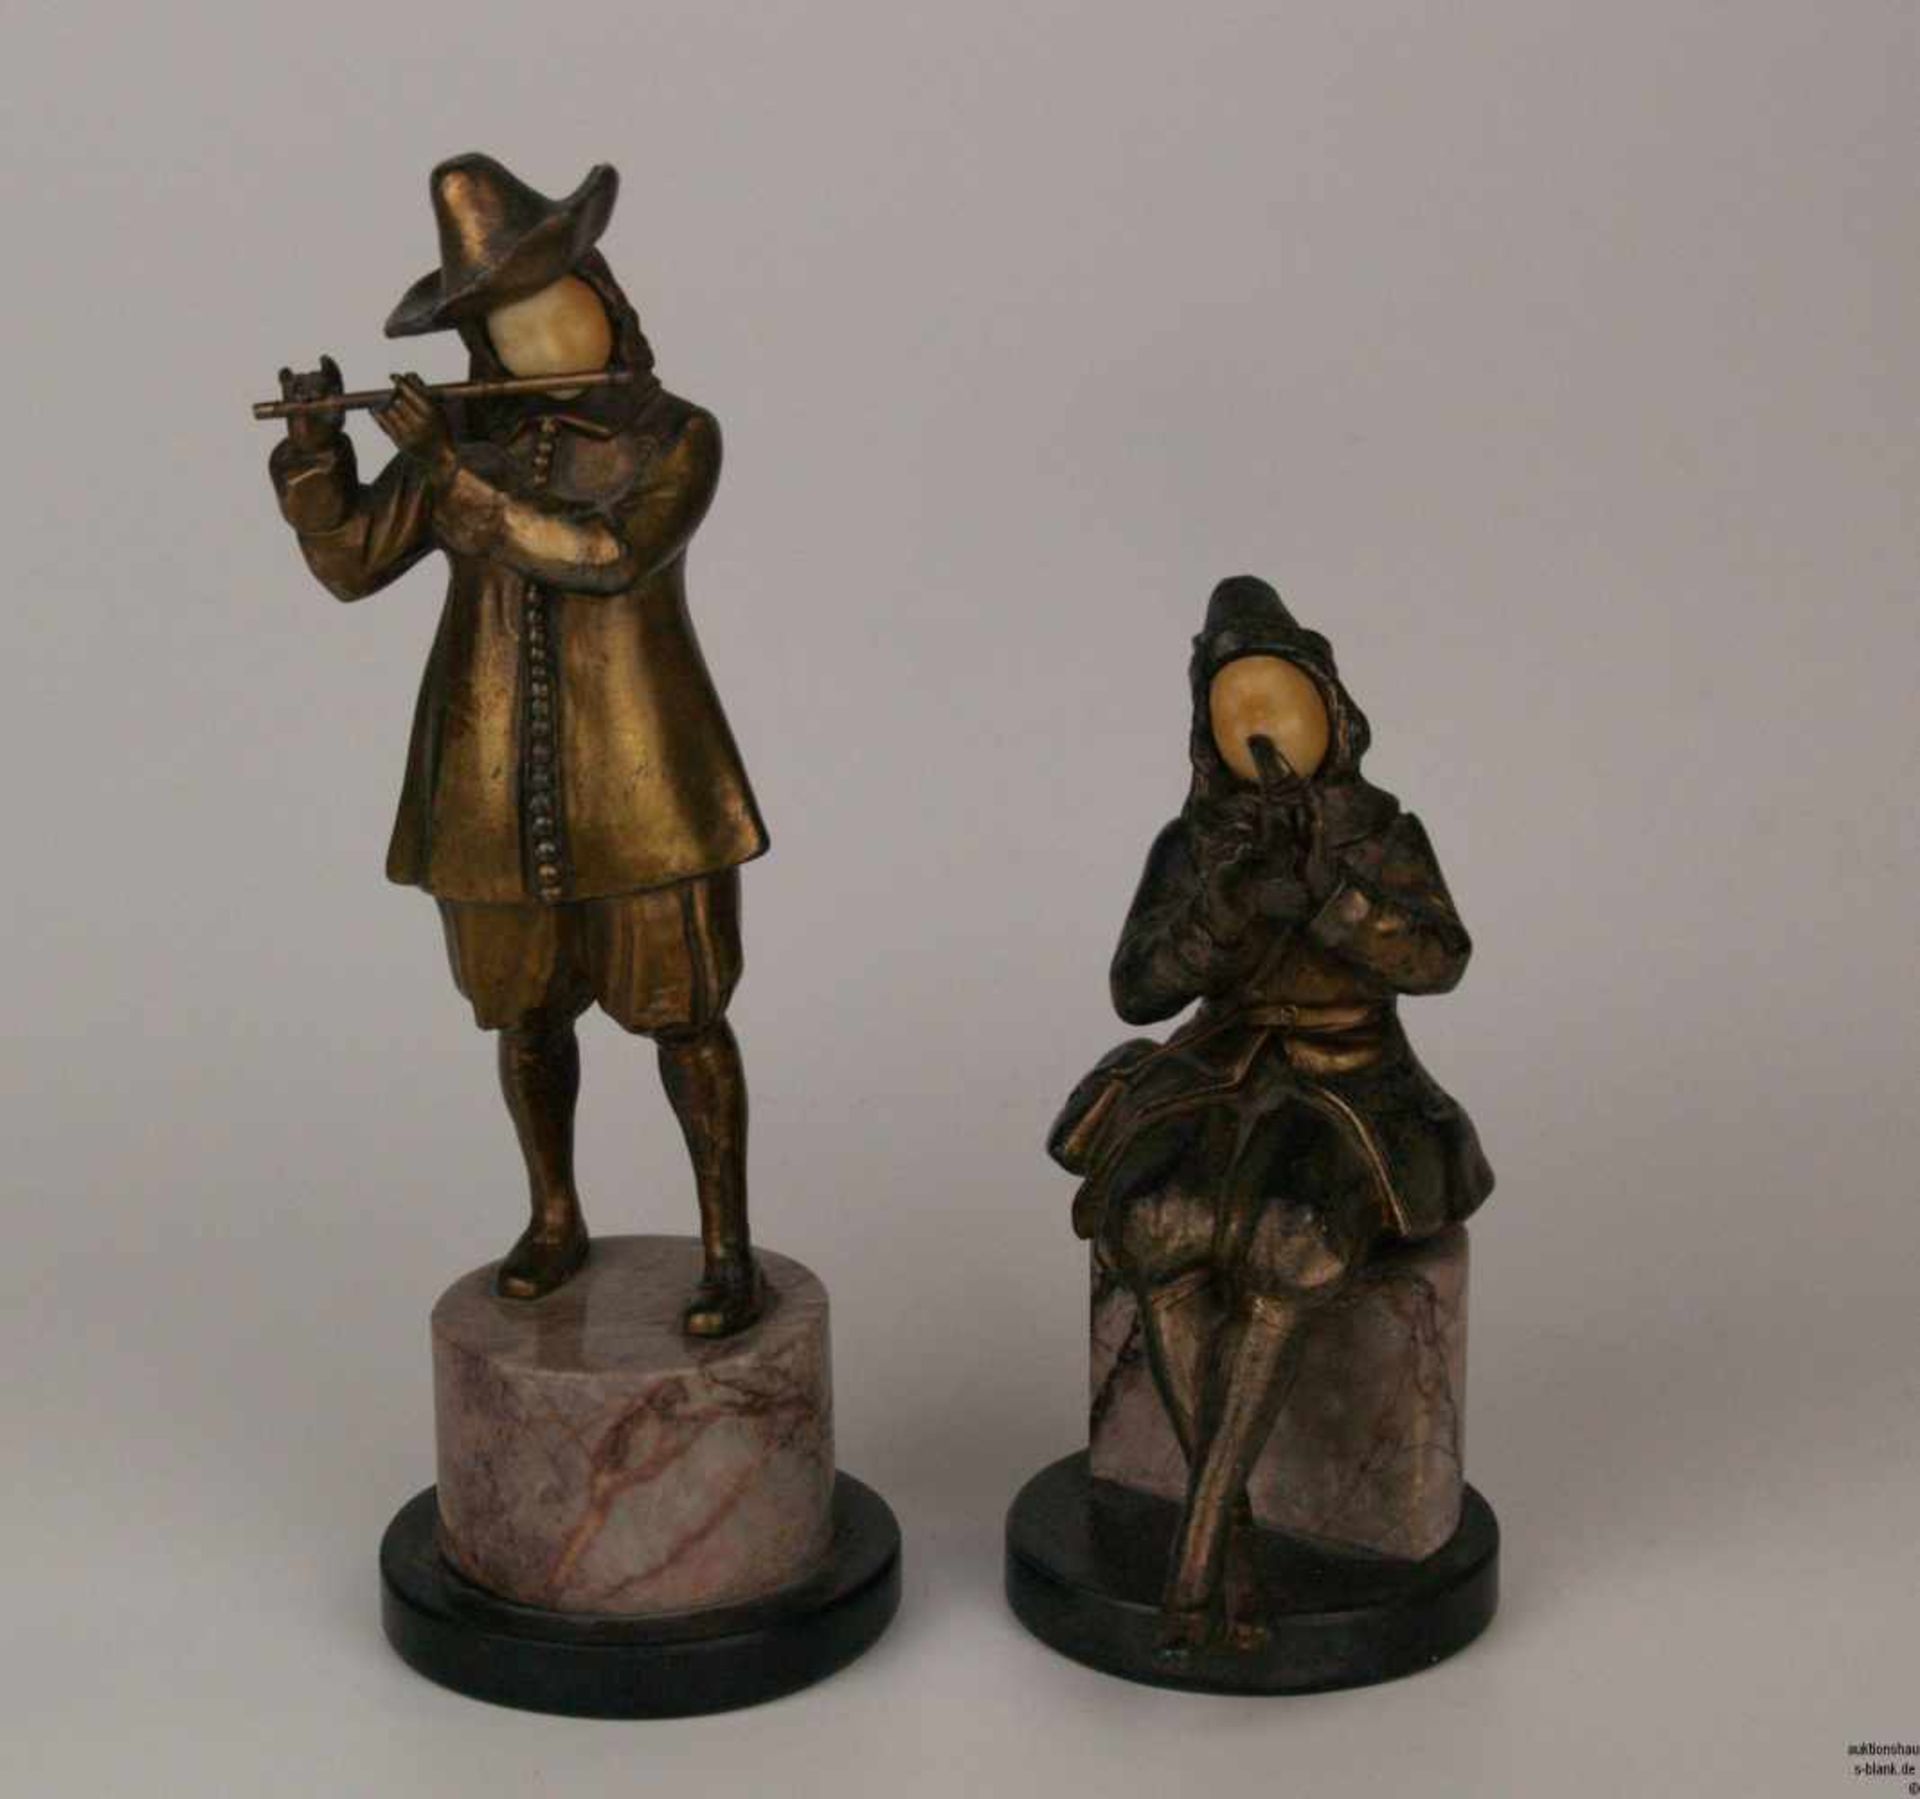 Paar Bronzefiguren "Flötenspieler" - Bronze, patiniert, Gesicht Elfenbein, geschnitzt, stehender und